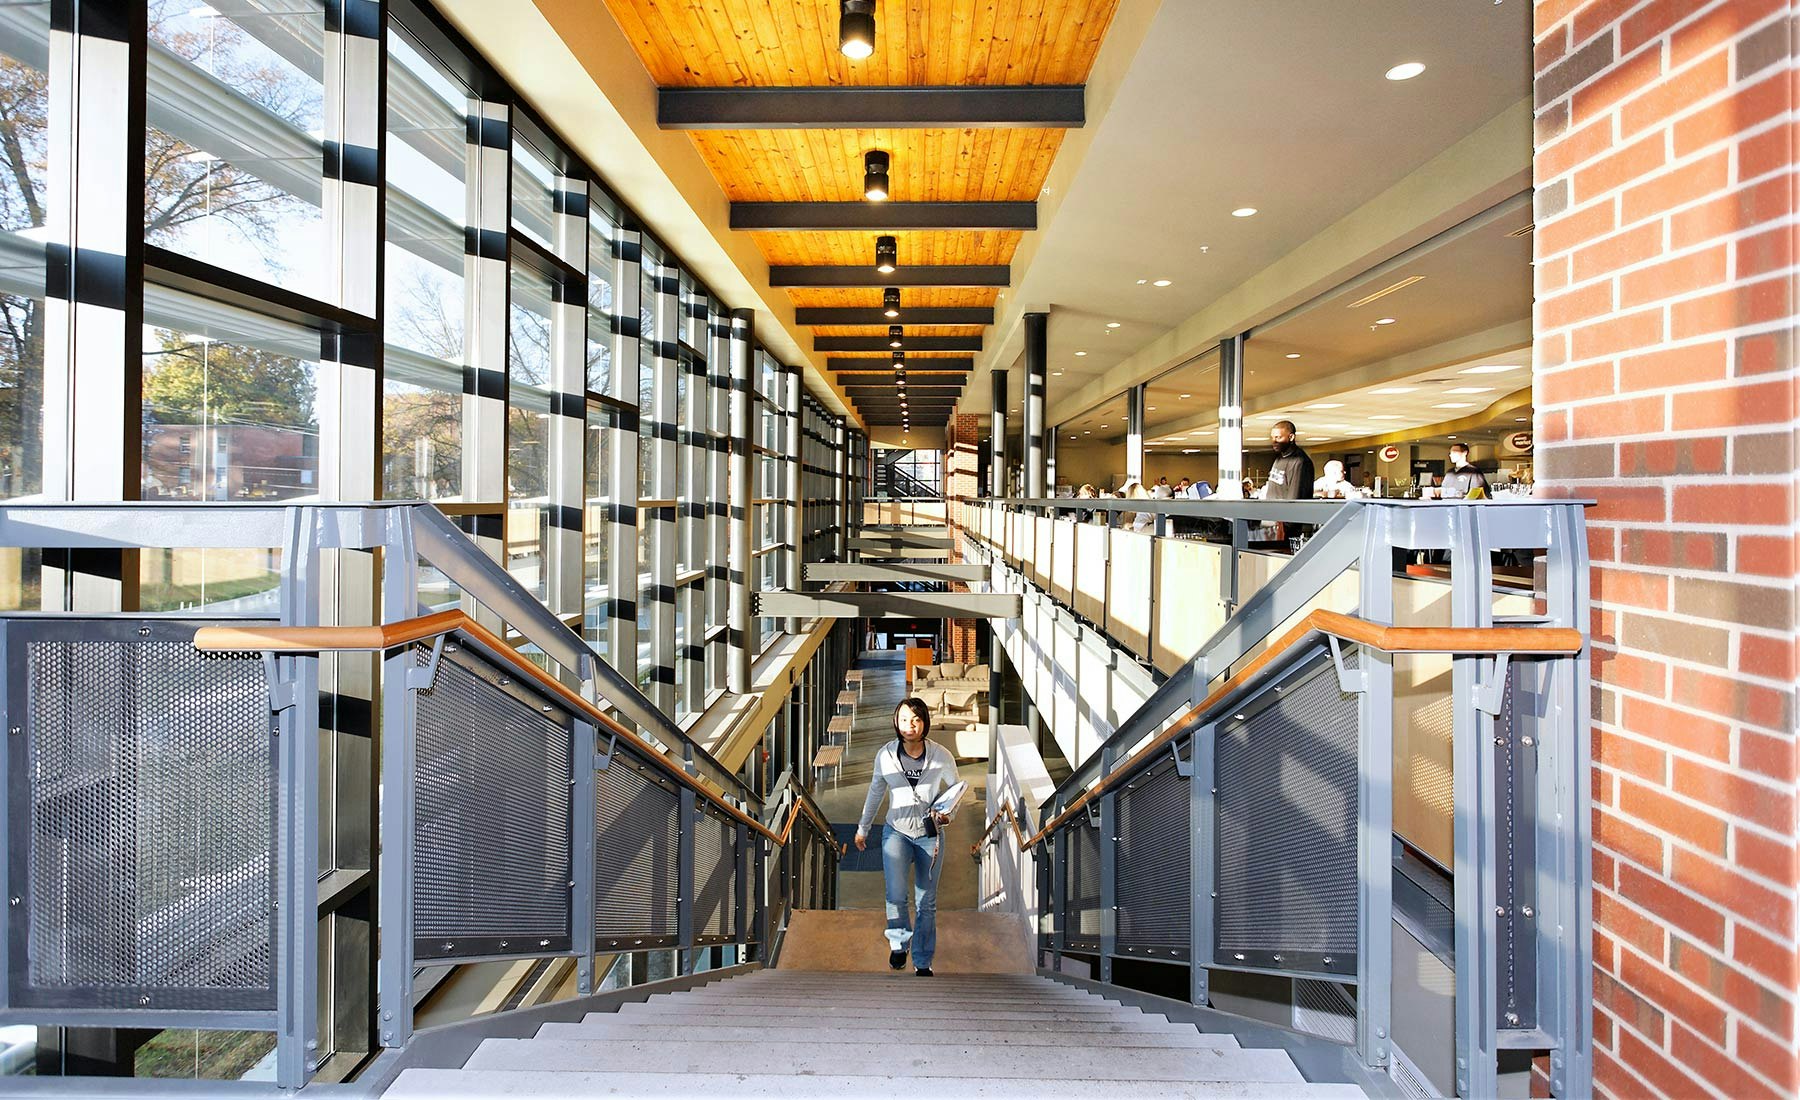 Averett University Student Center Architecture & Design